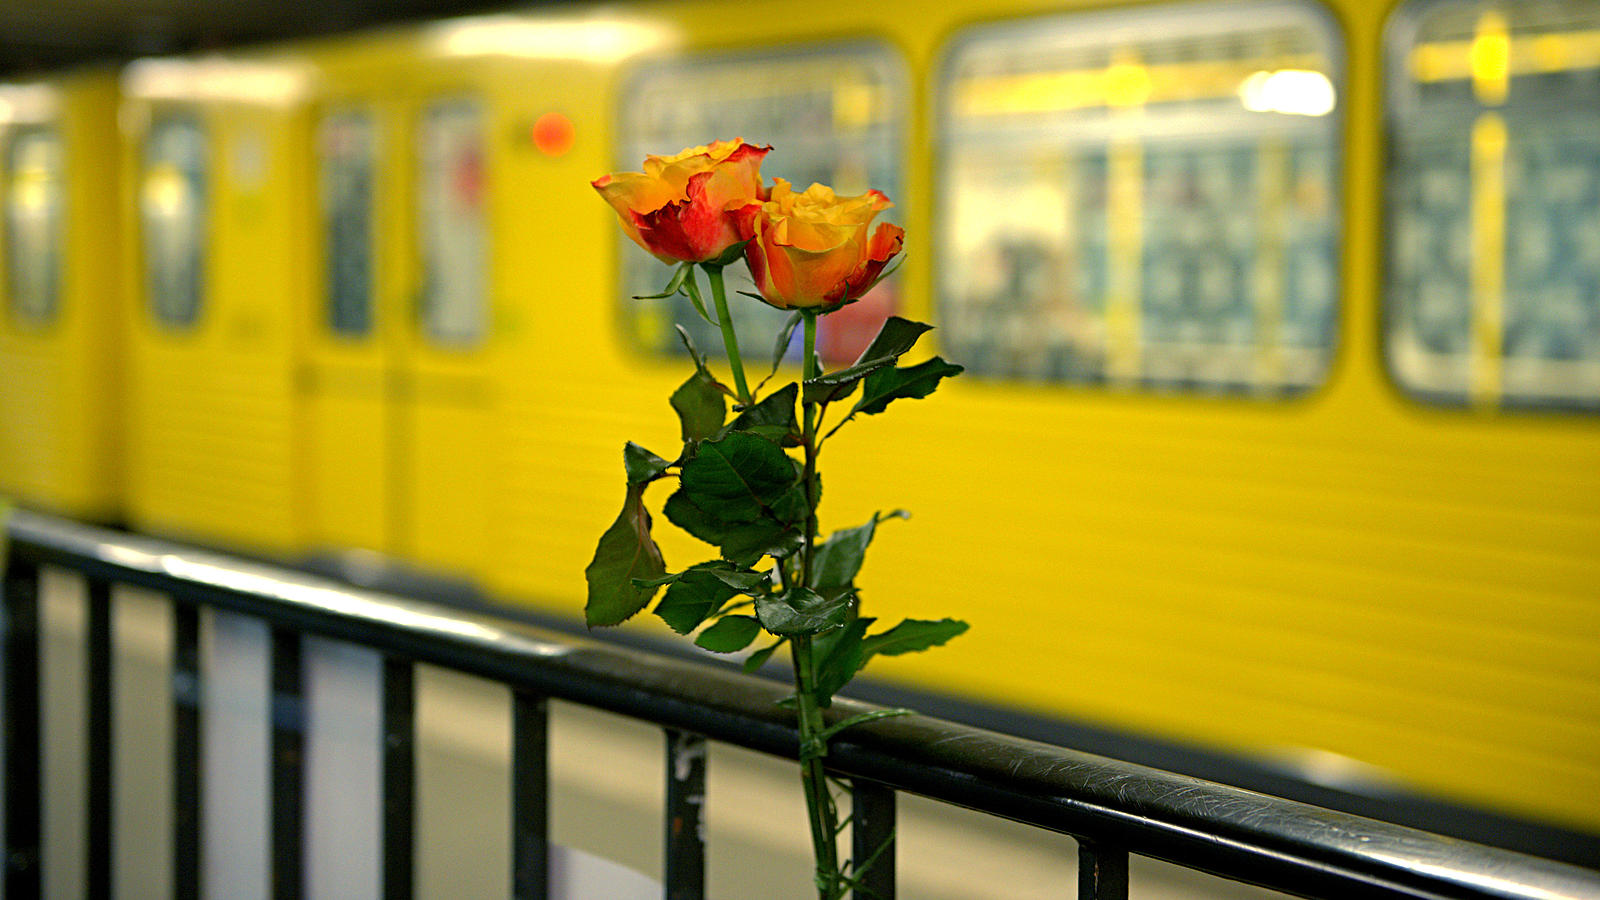 ARCHIV - Blumen sind am 22.01.2016 in Berlin auf einem Bahnsteig der U-Bahnstation Ernst-Reuter-Platz zu sehen. Sie erinnern an eine junge Frau, die von einem Mann vor eine einfahrende U-Bahn gestoßen worden war. (zu Chronologie "Die wichtigsten Erei